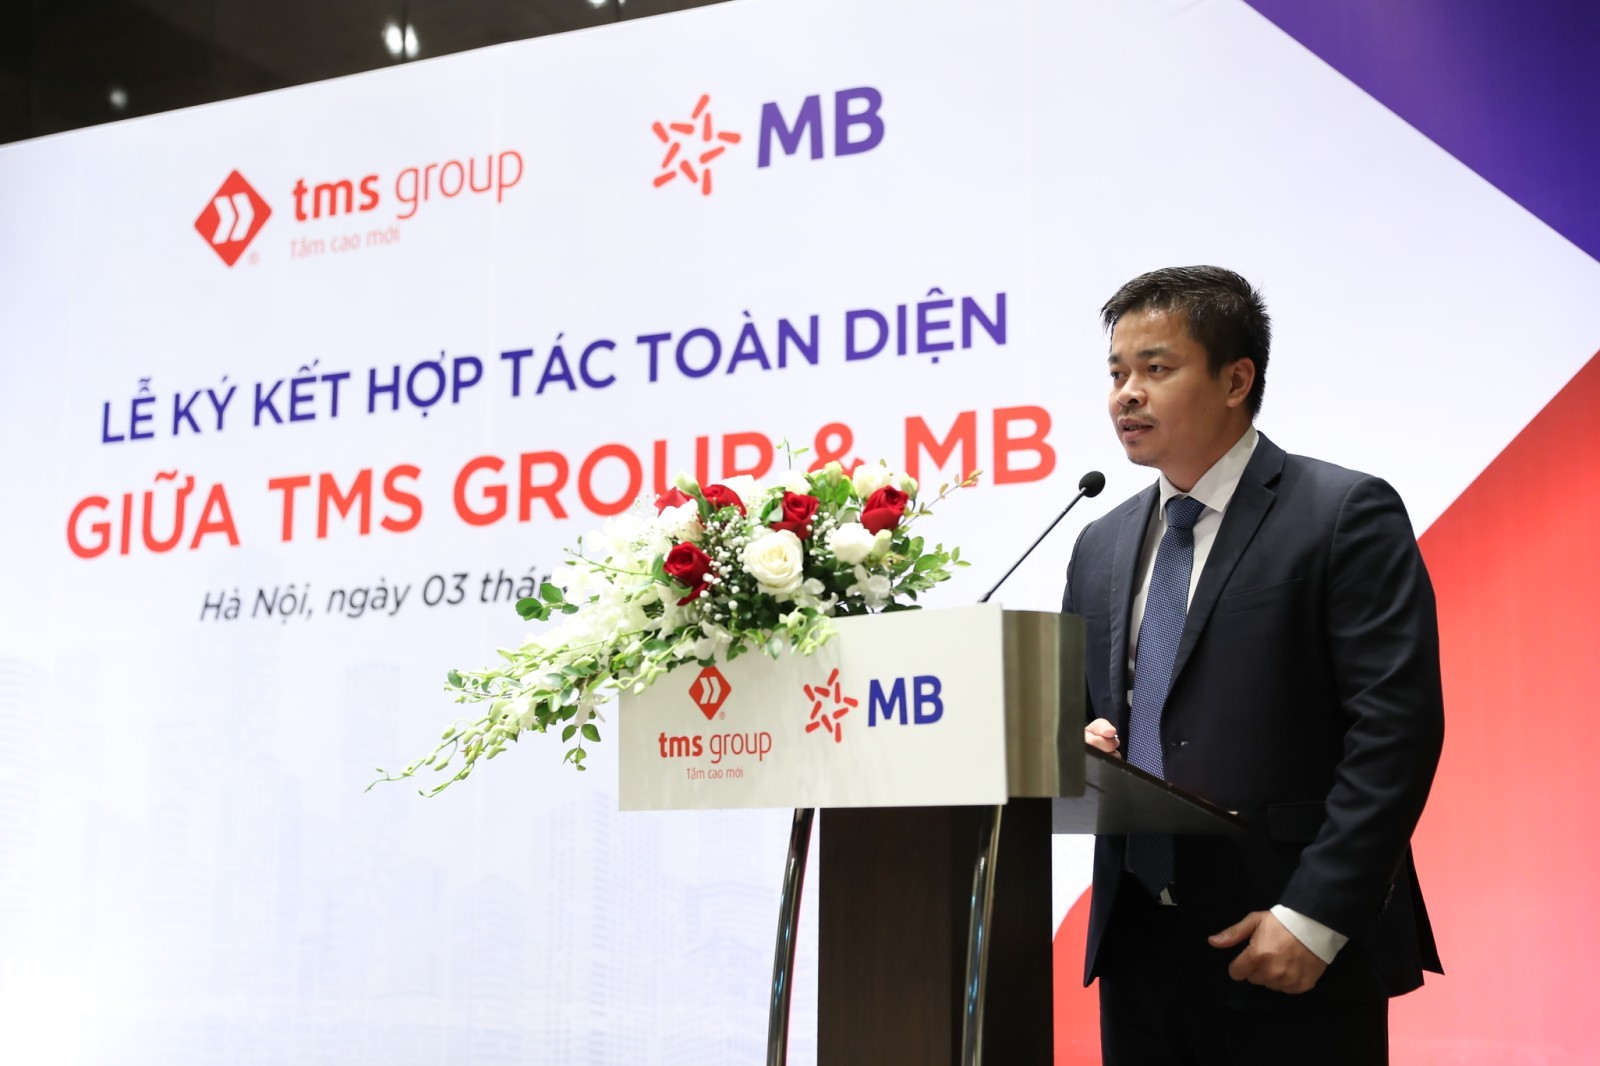 Tổng giám đốc TMS Group – Nguyễn Việt Phương phát biểu tại lễ ký kết